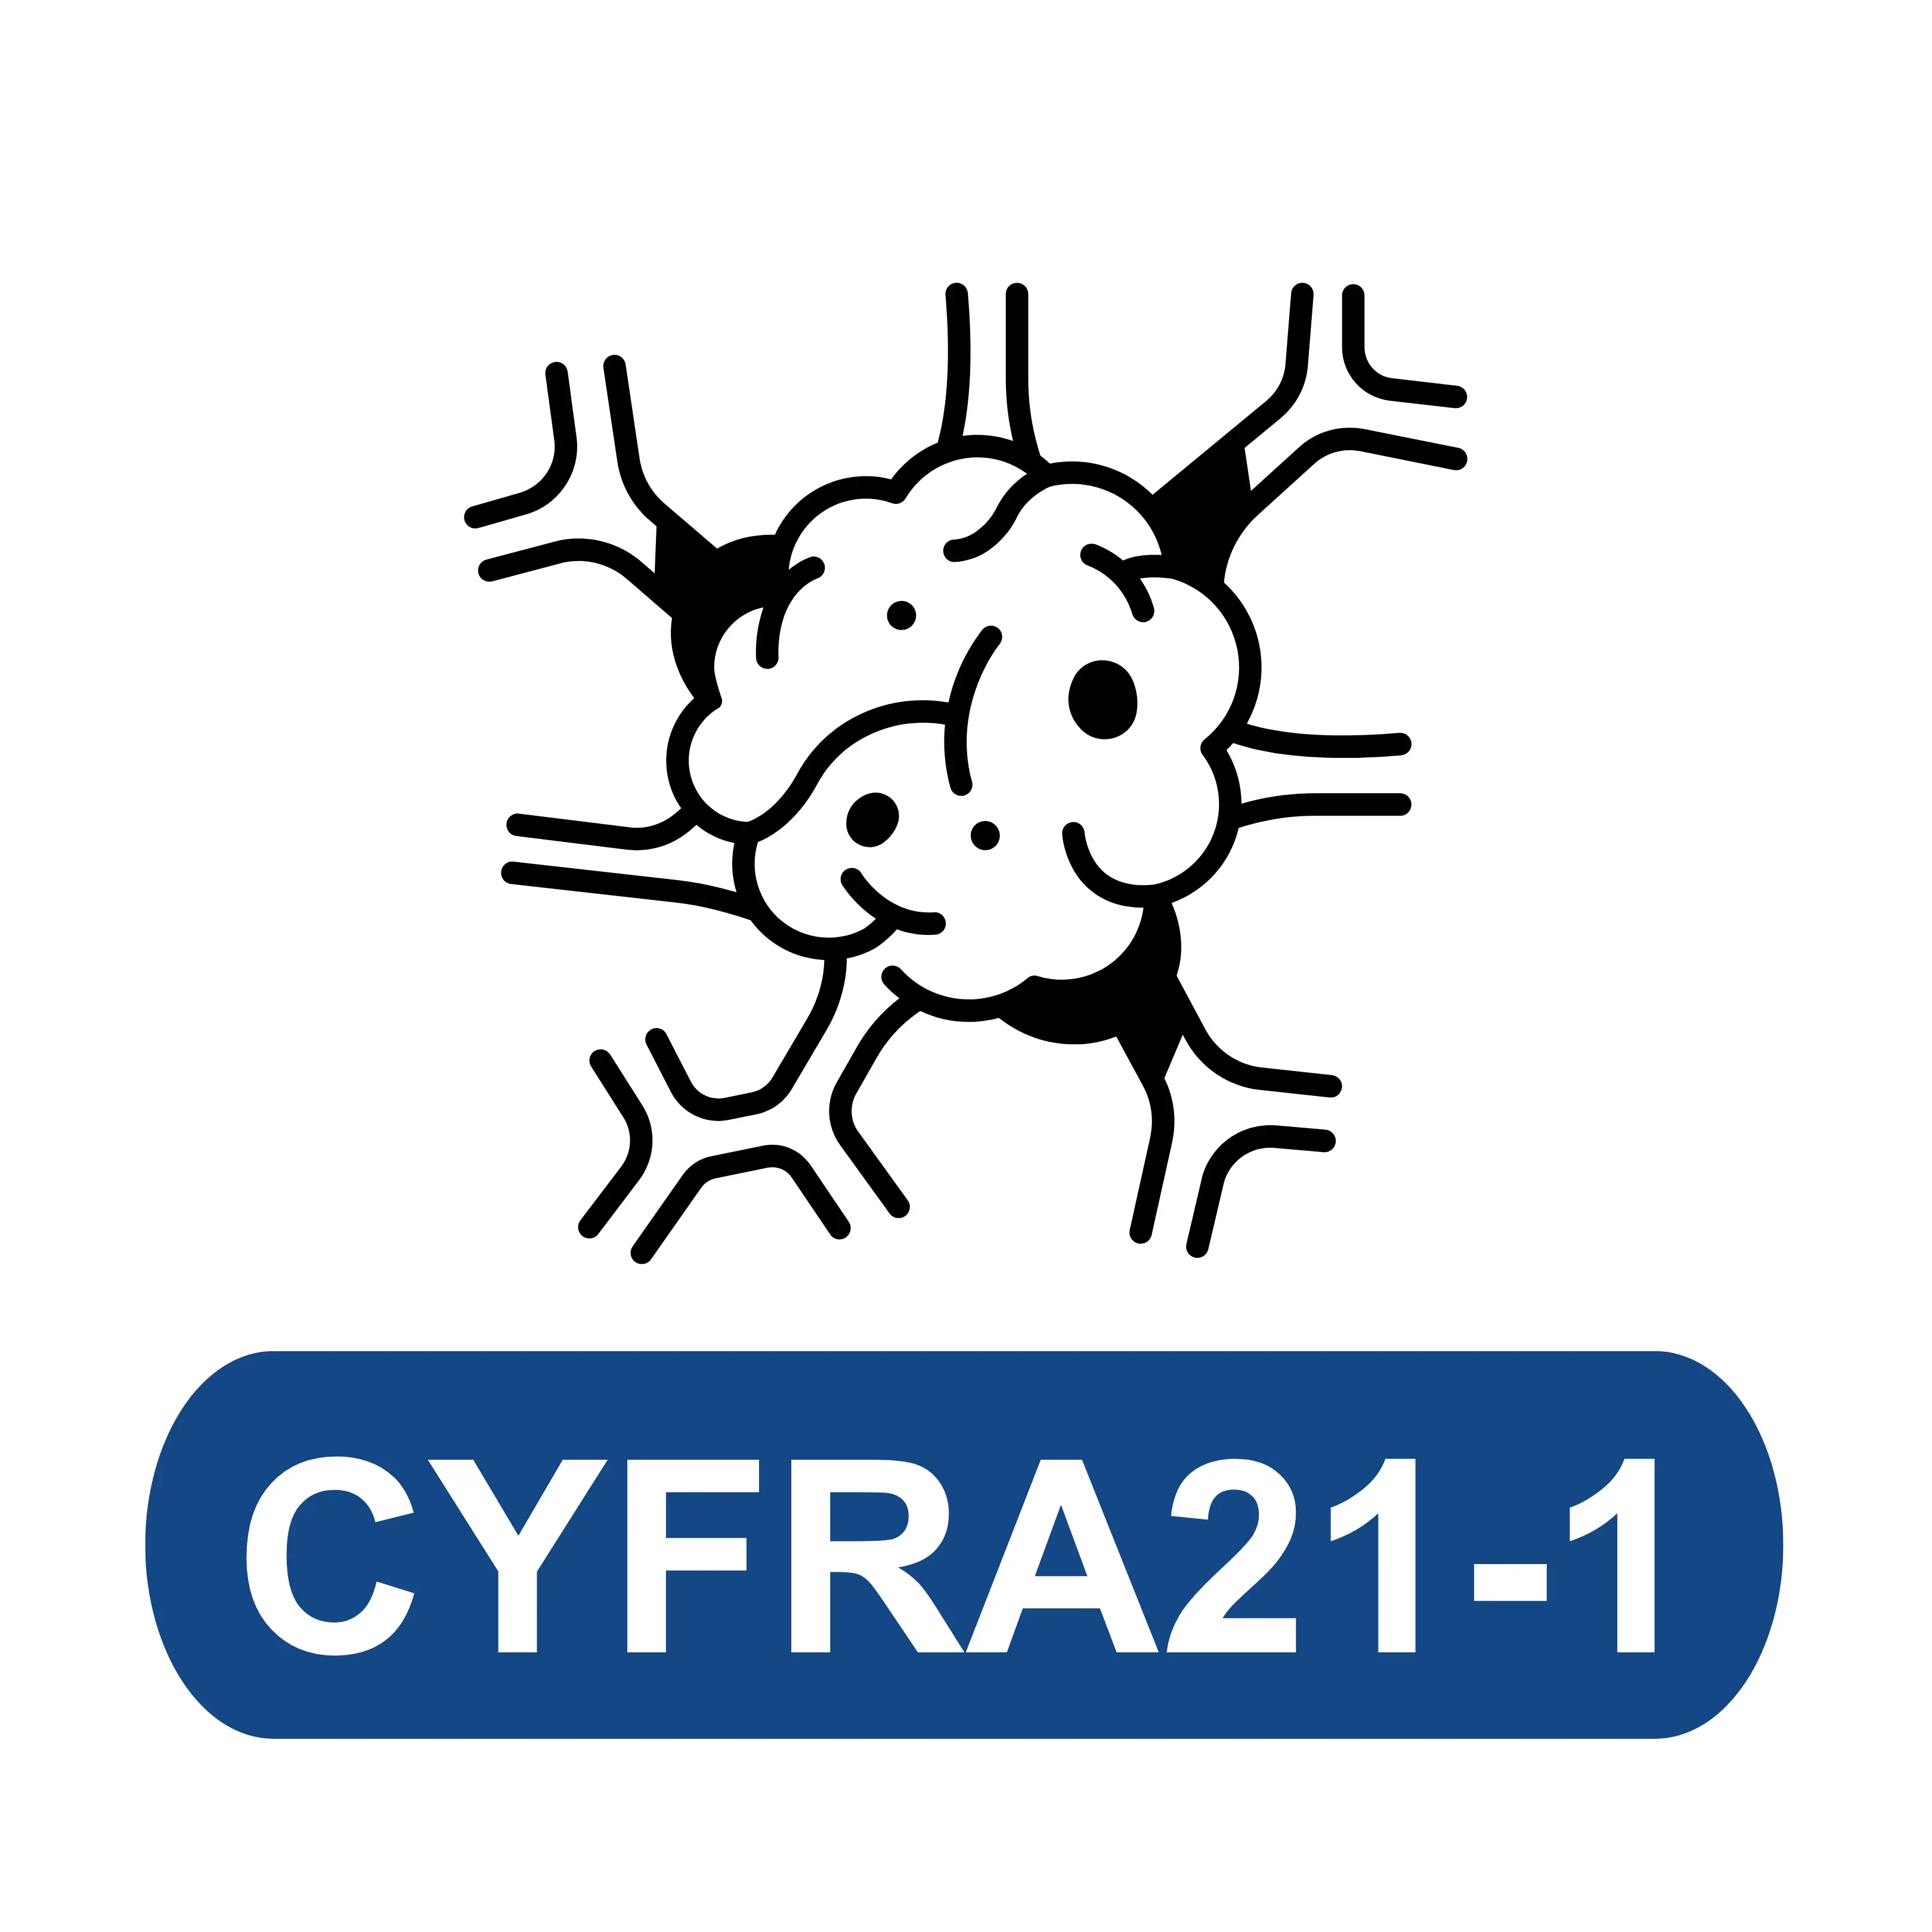 Cytokeratin 19 Fragment (CYFRA21-1)